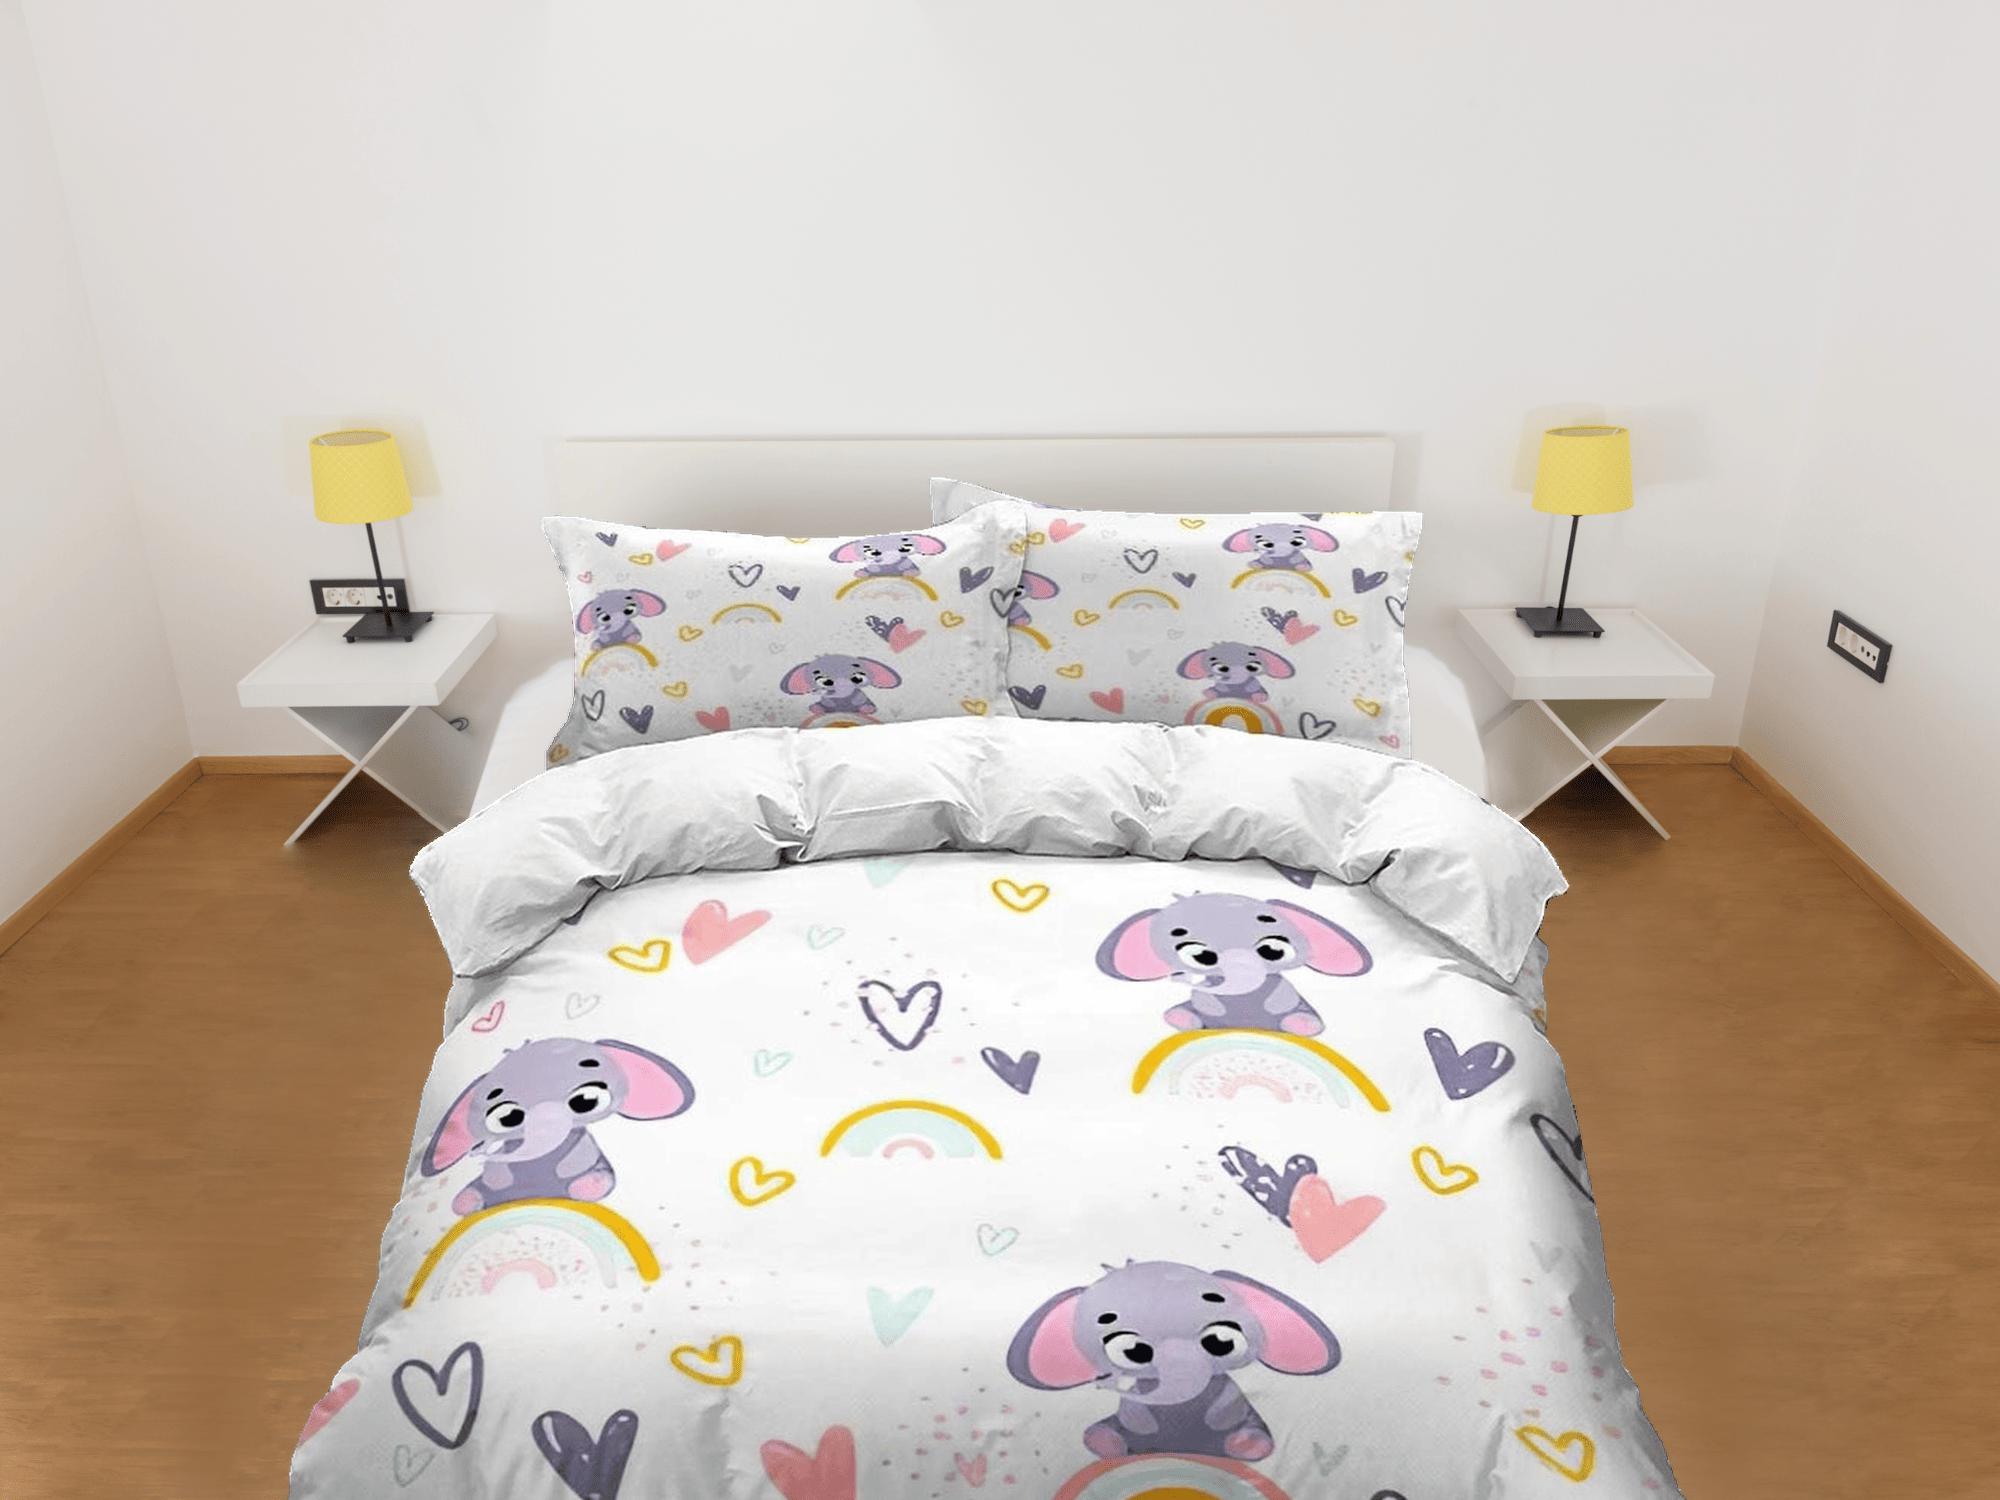 daintyduvet Boho rainbow pattern elephant bedding cute duvet cover set, kids bedding full, nursery bed decor, elephant baby shower, toddler bedding